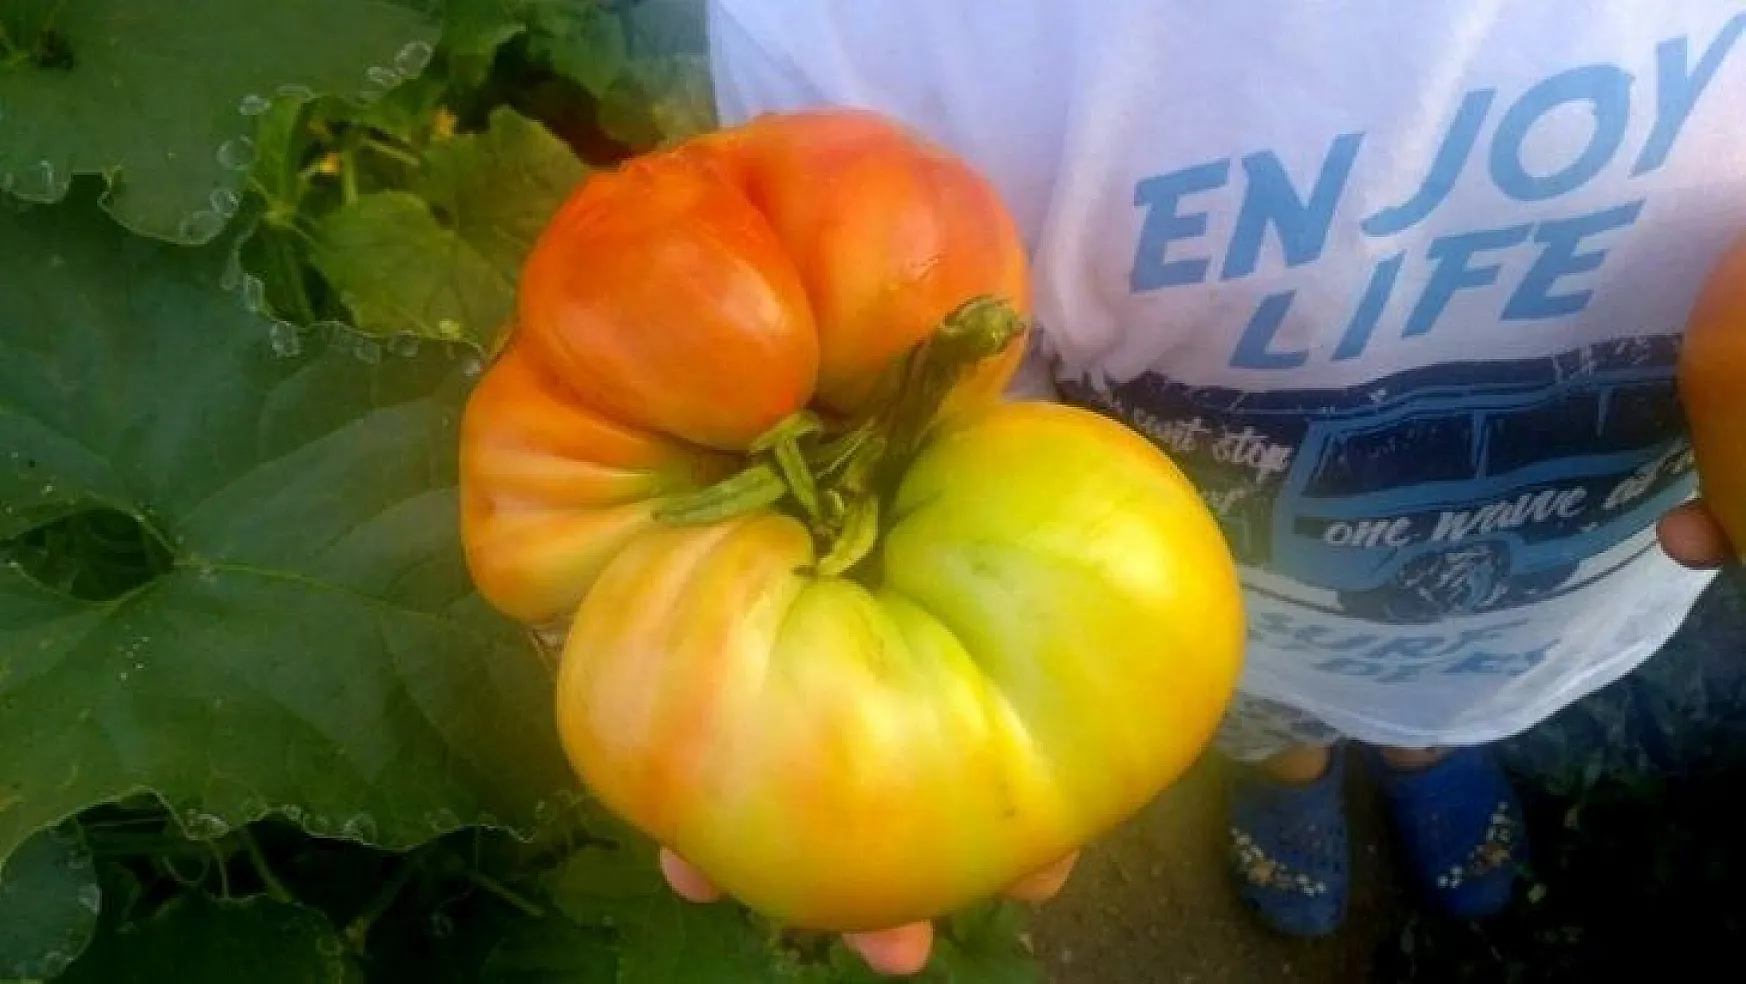 Yerel Tohum Merkezi'nden aldığı tohumla 1 kilo domates üretti